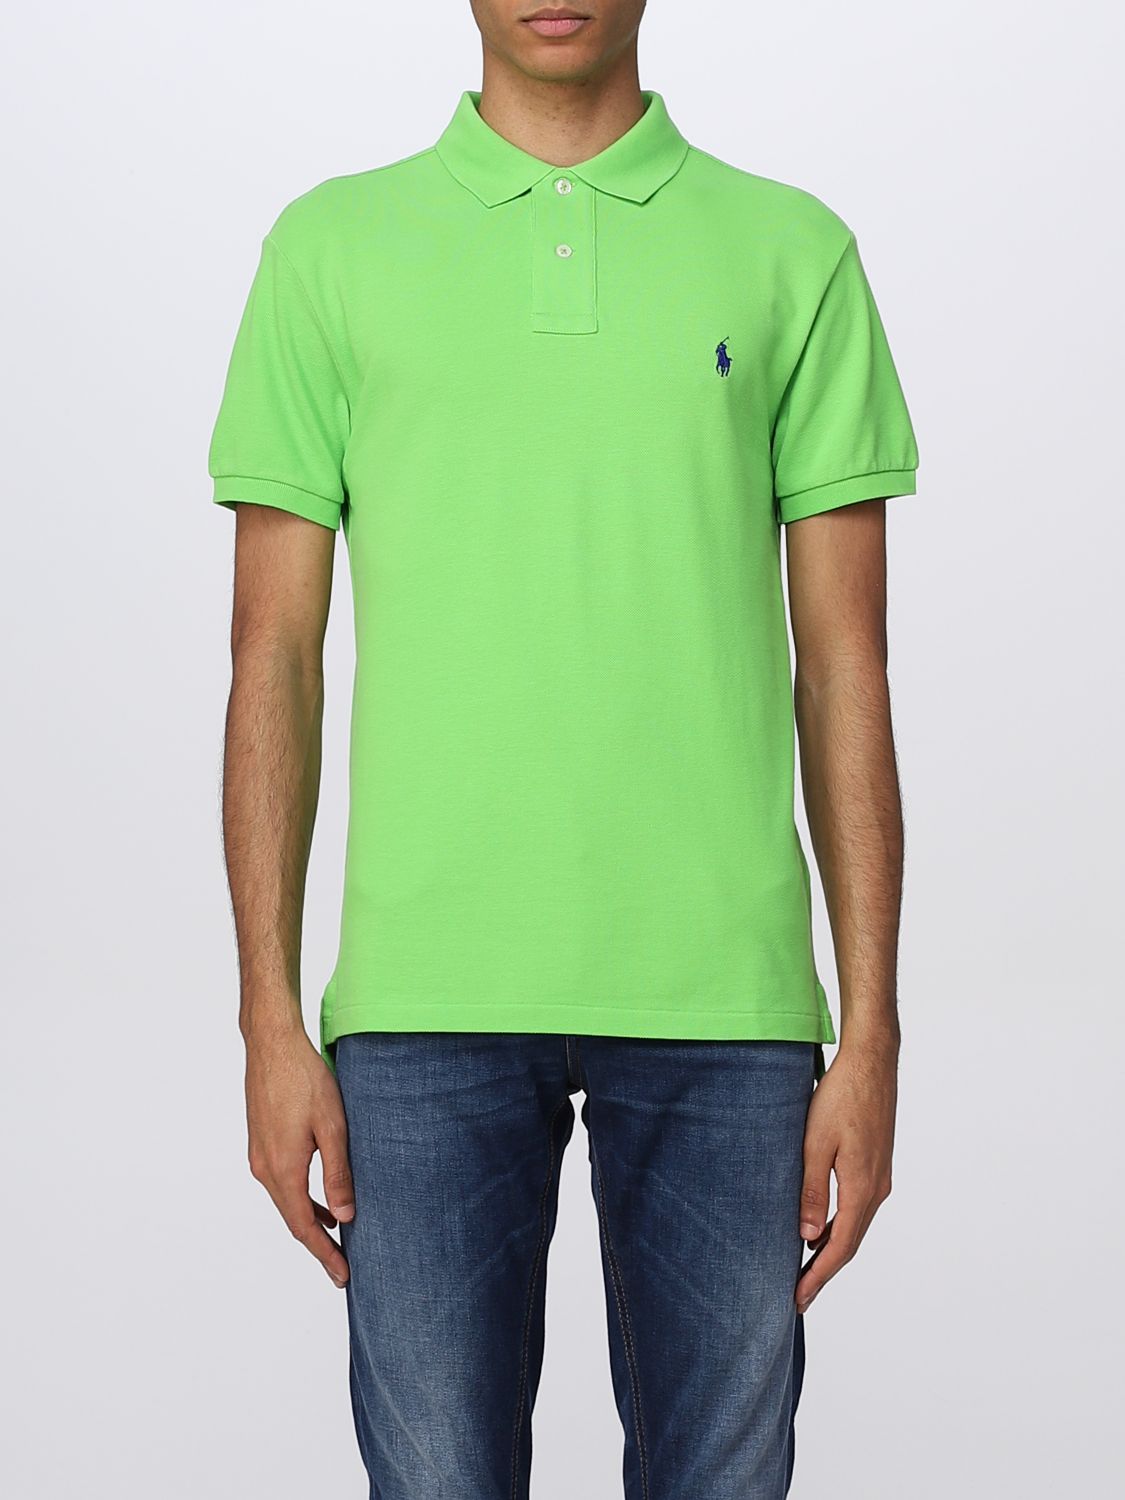 POLO RALPH LAUREN: polo shirt for man - Green | Polo Ralph Lauren polo ...